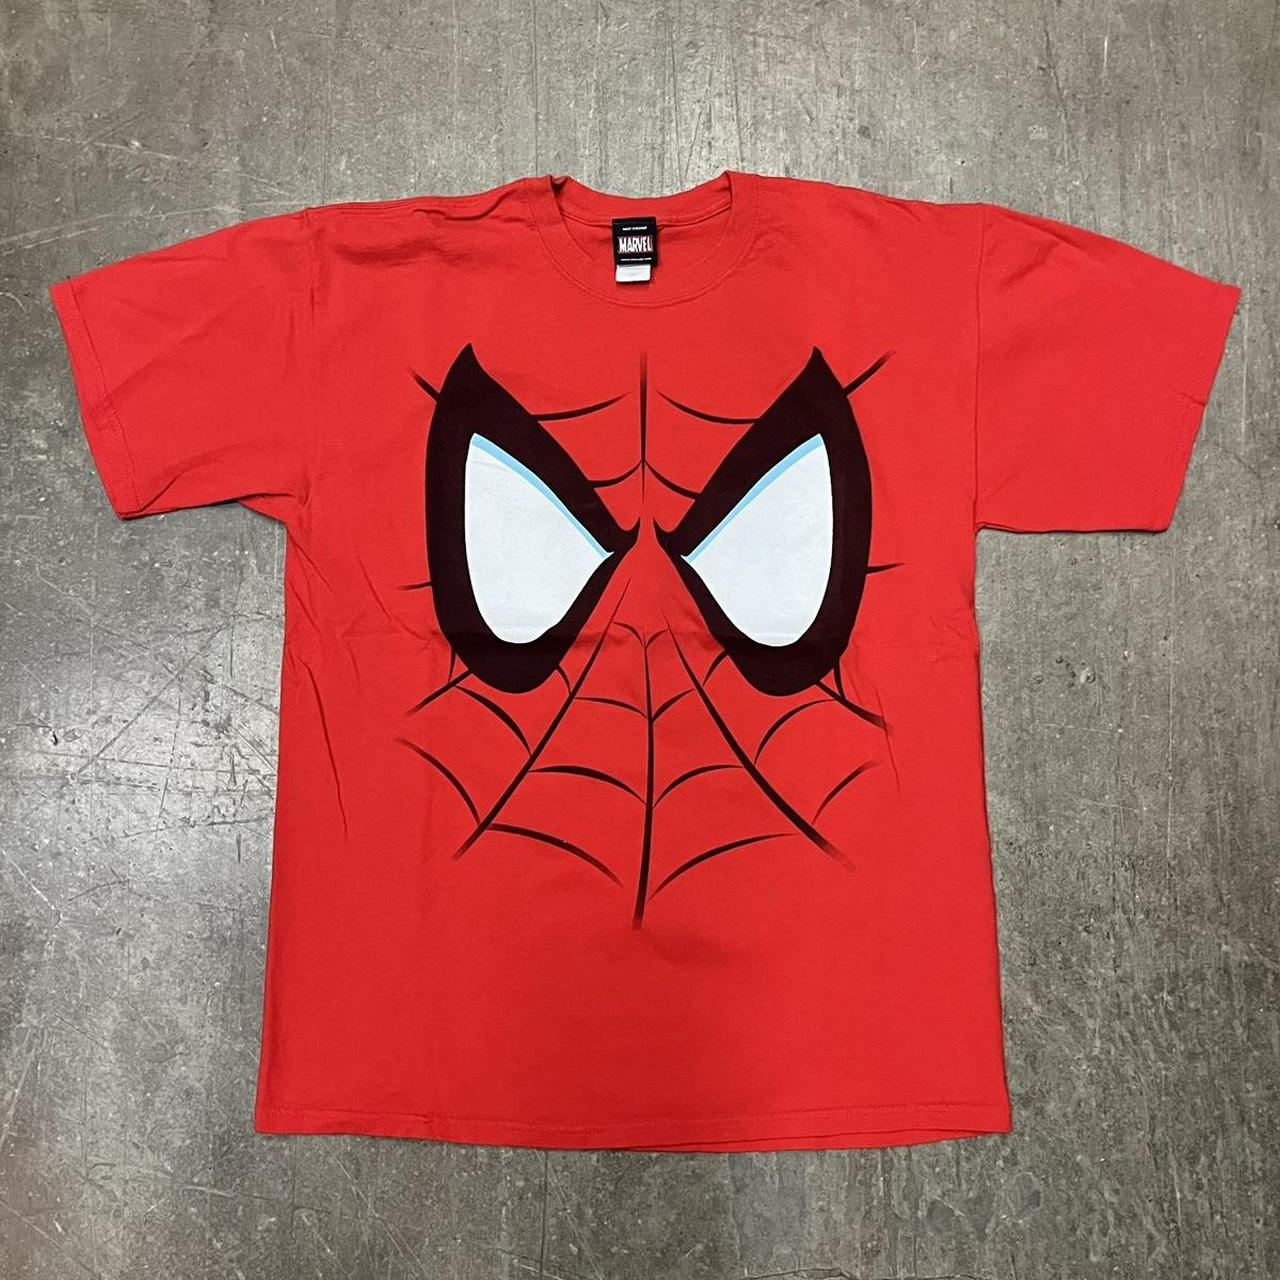 Vintage Spider-Man Shirt size Large y2k 2000s Mad... - Depop